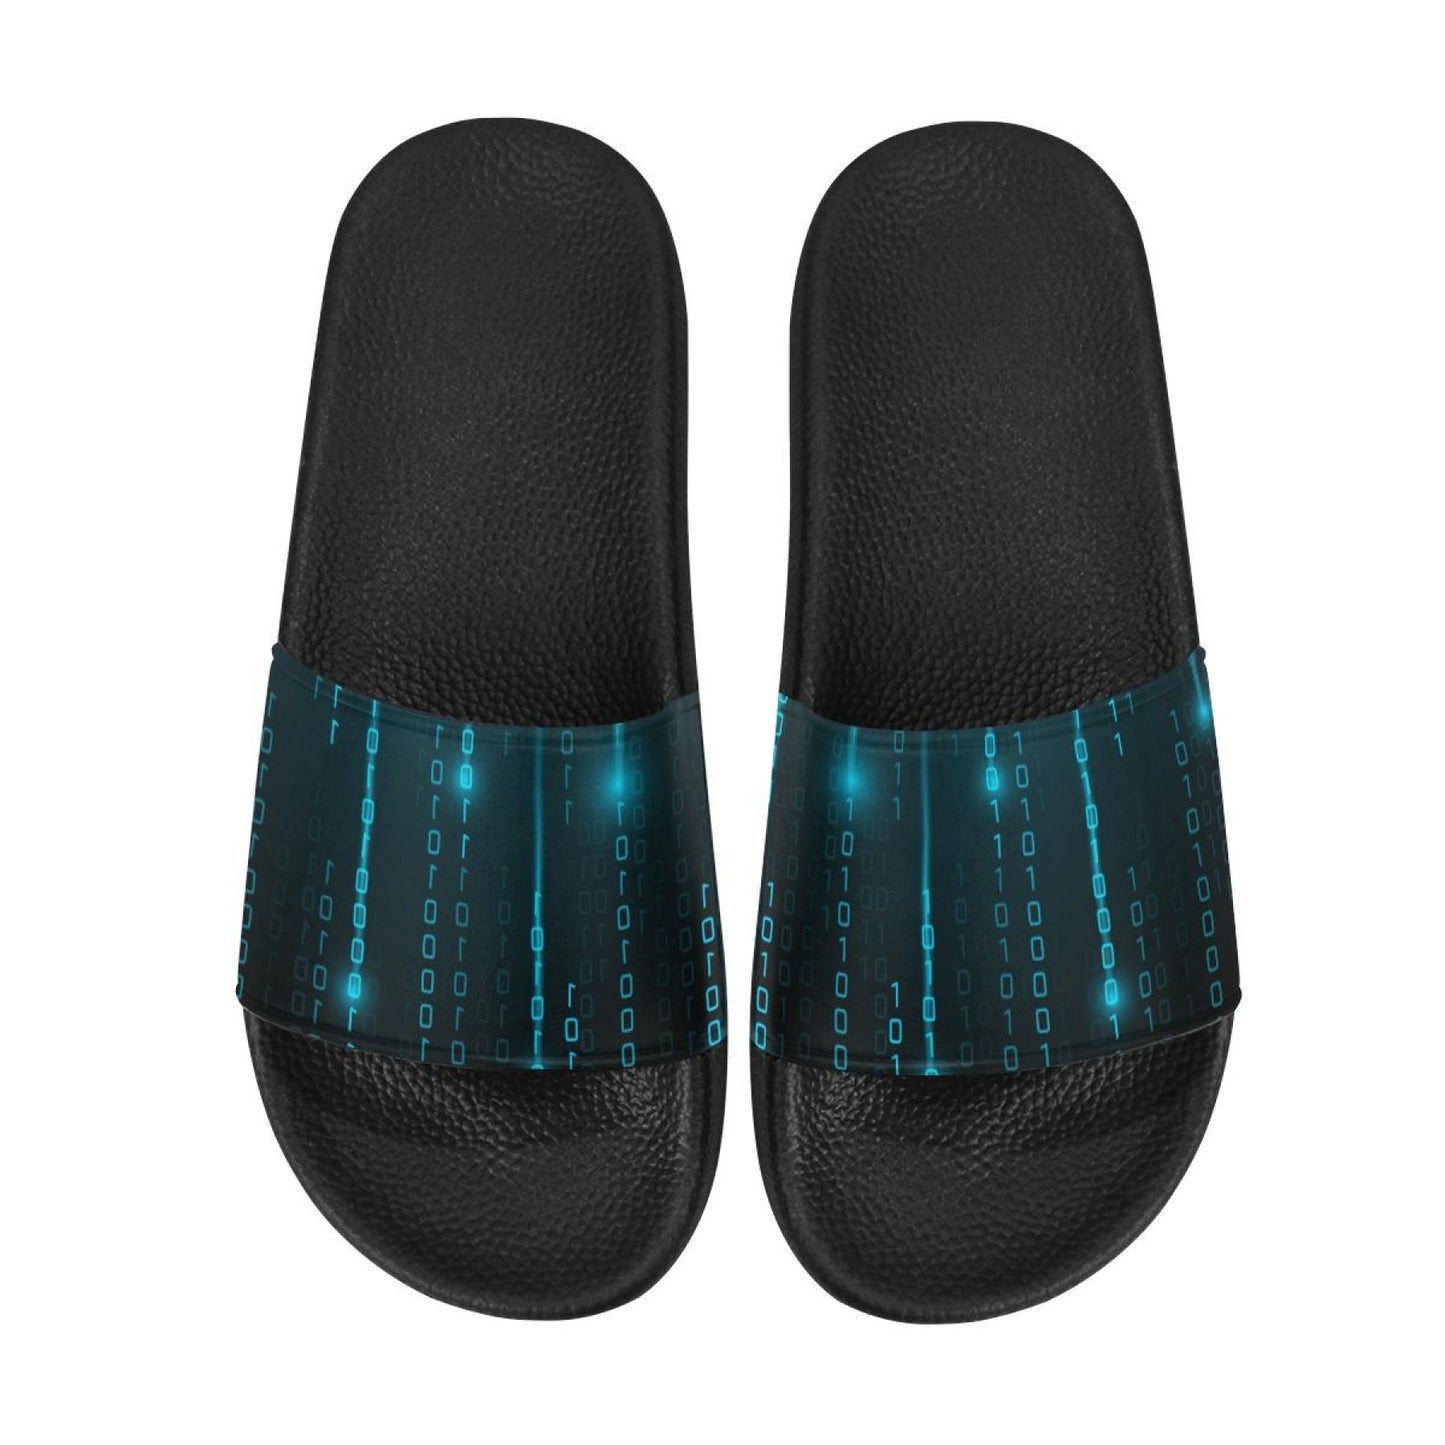 Uniquely You Womens Slides / Flip-Flop Sandals - Blue Matrix Print